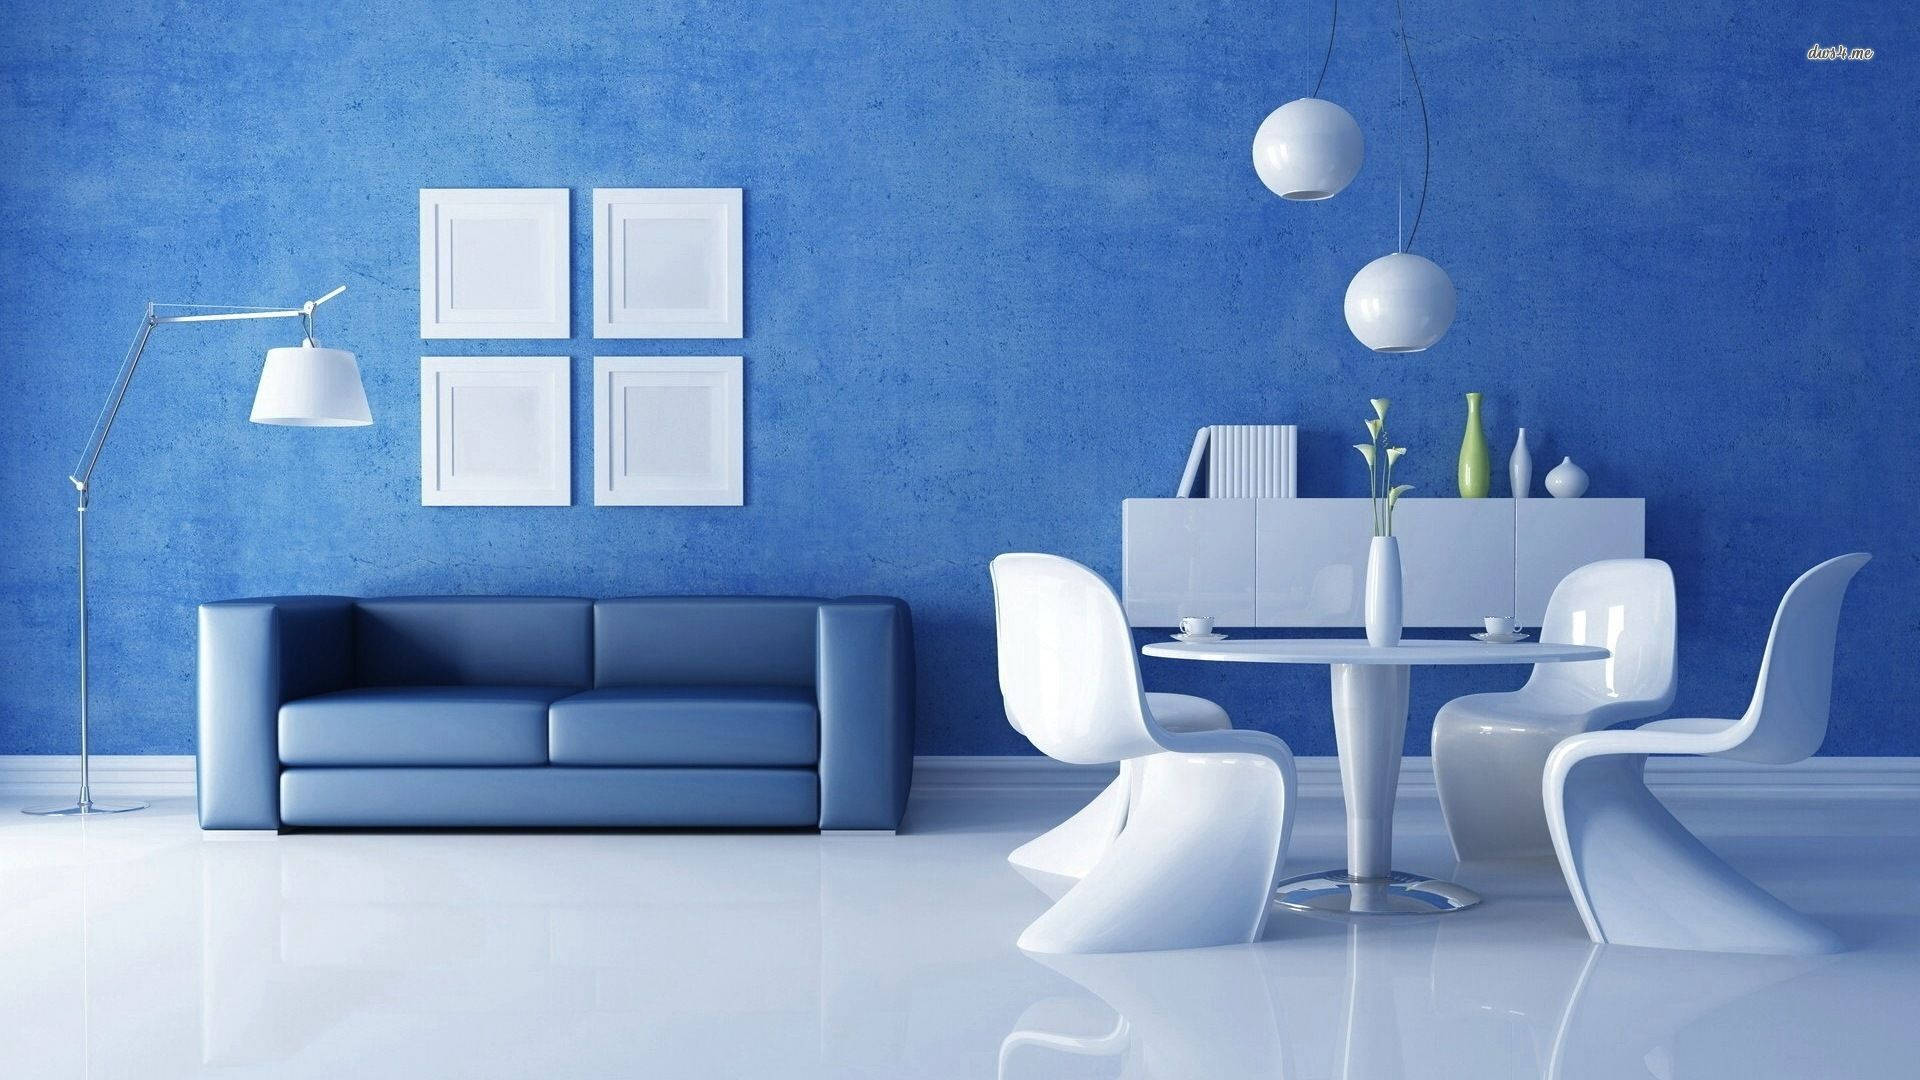 Elegant White And Blue Living Room Interior